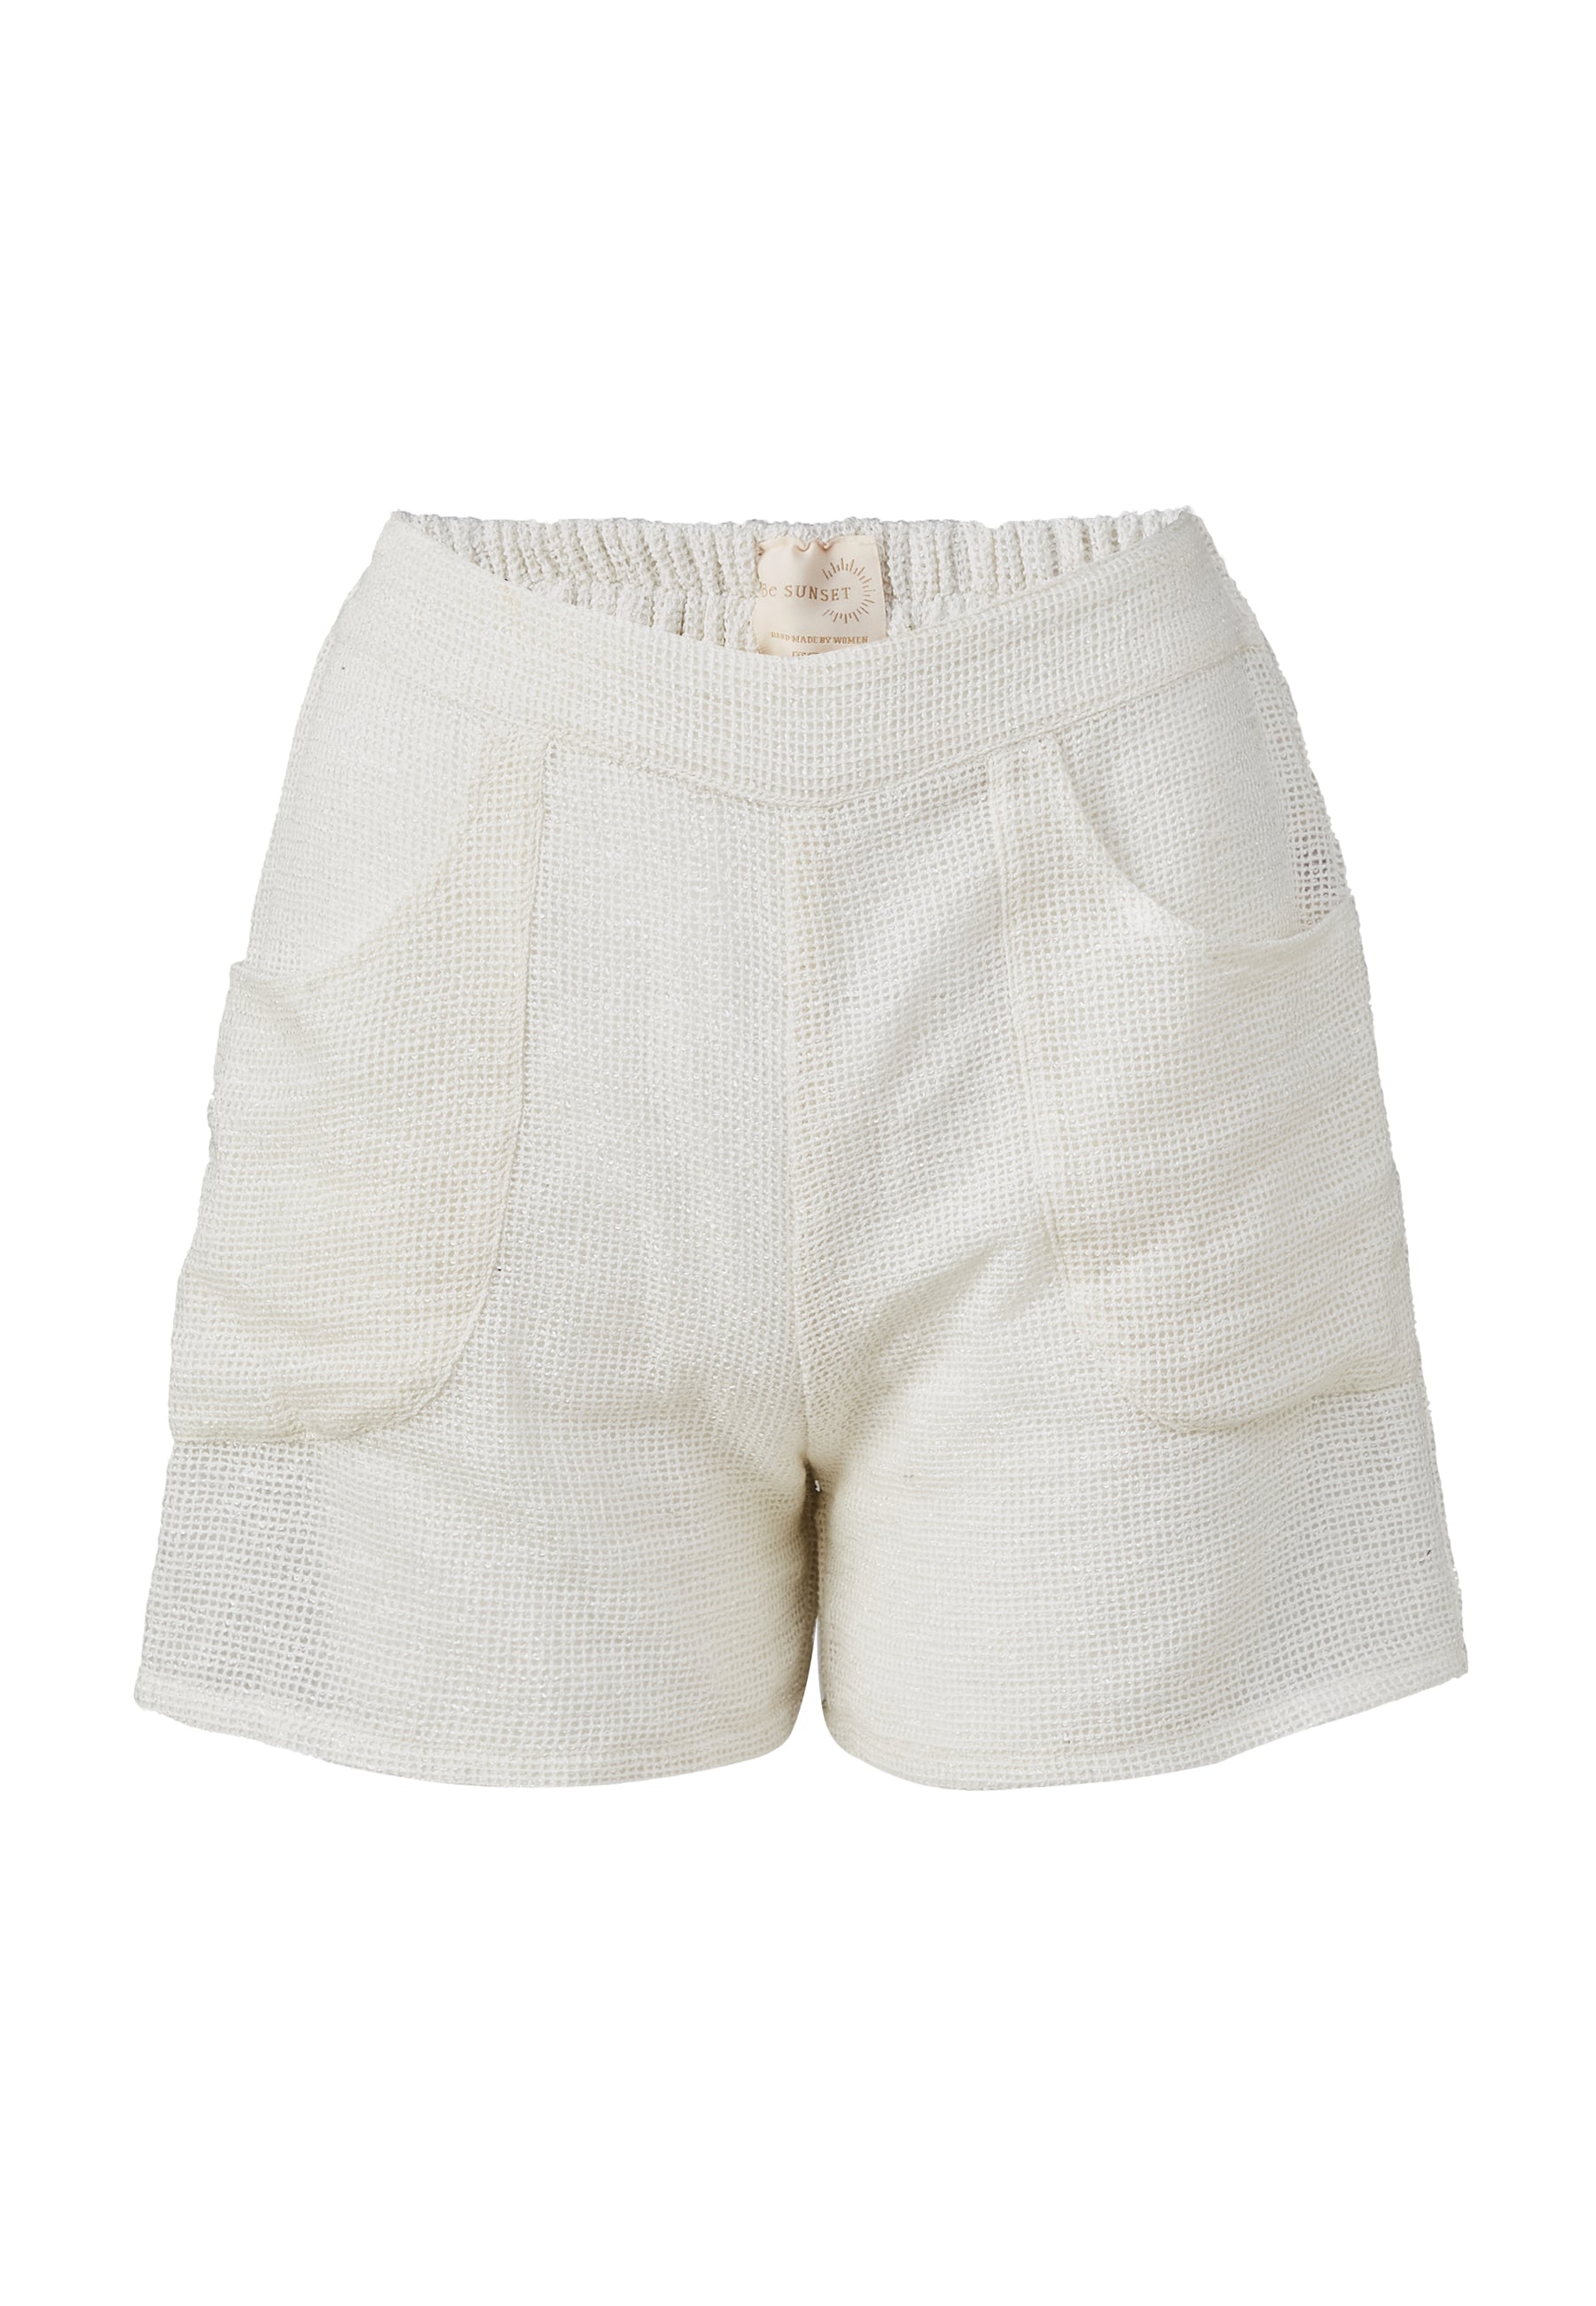 Bay White Shorts